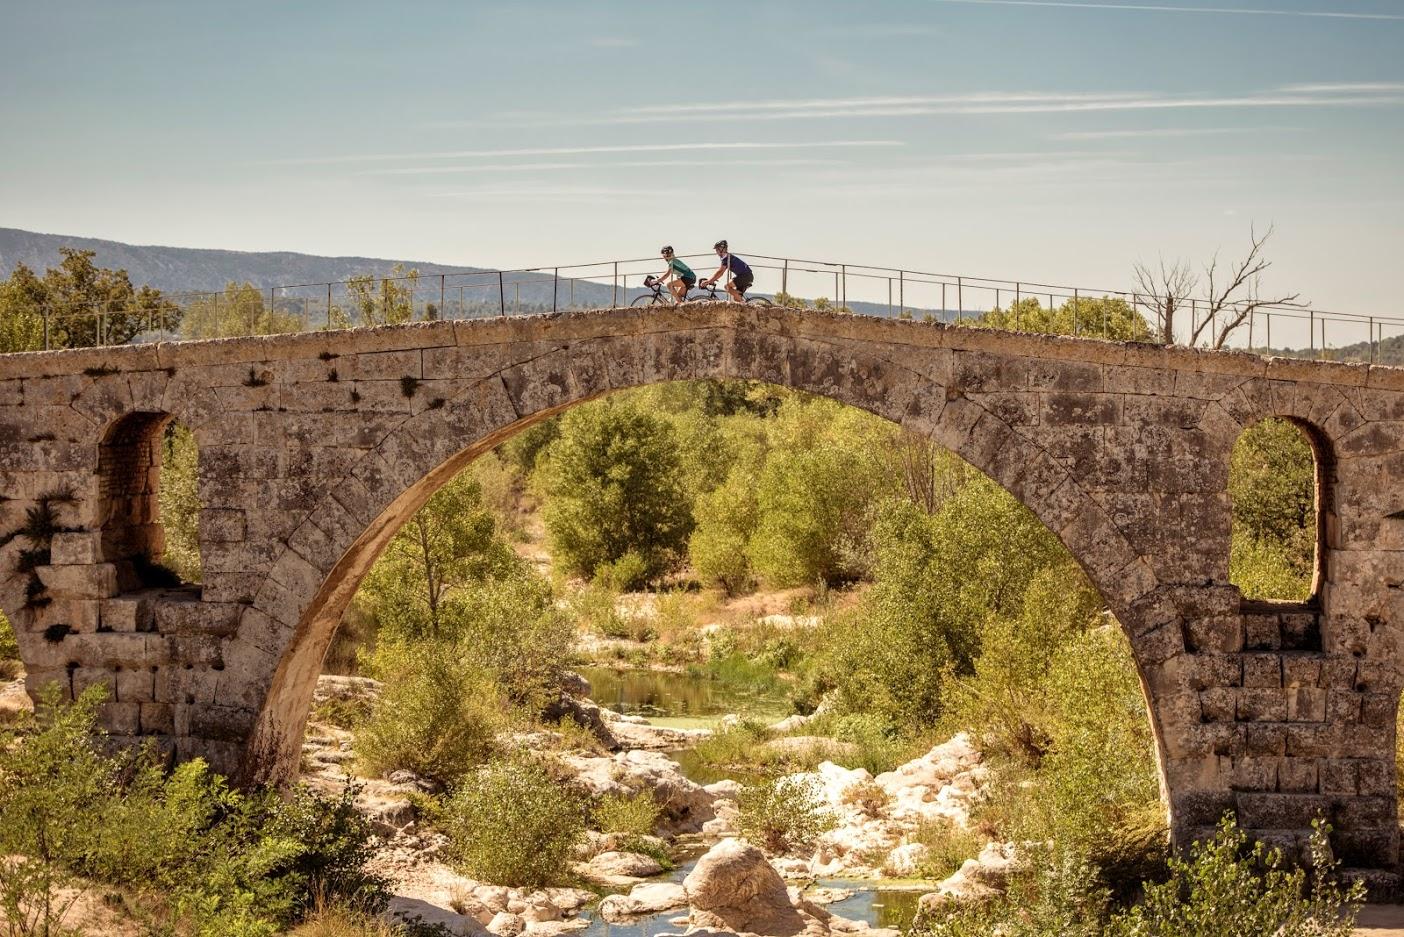 Provence Luberon Biking